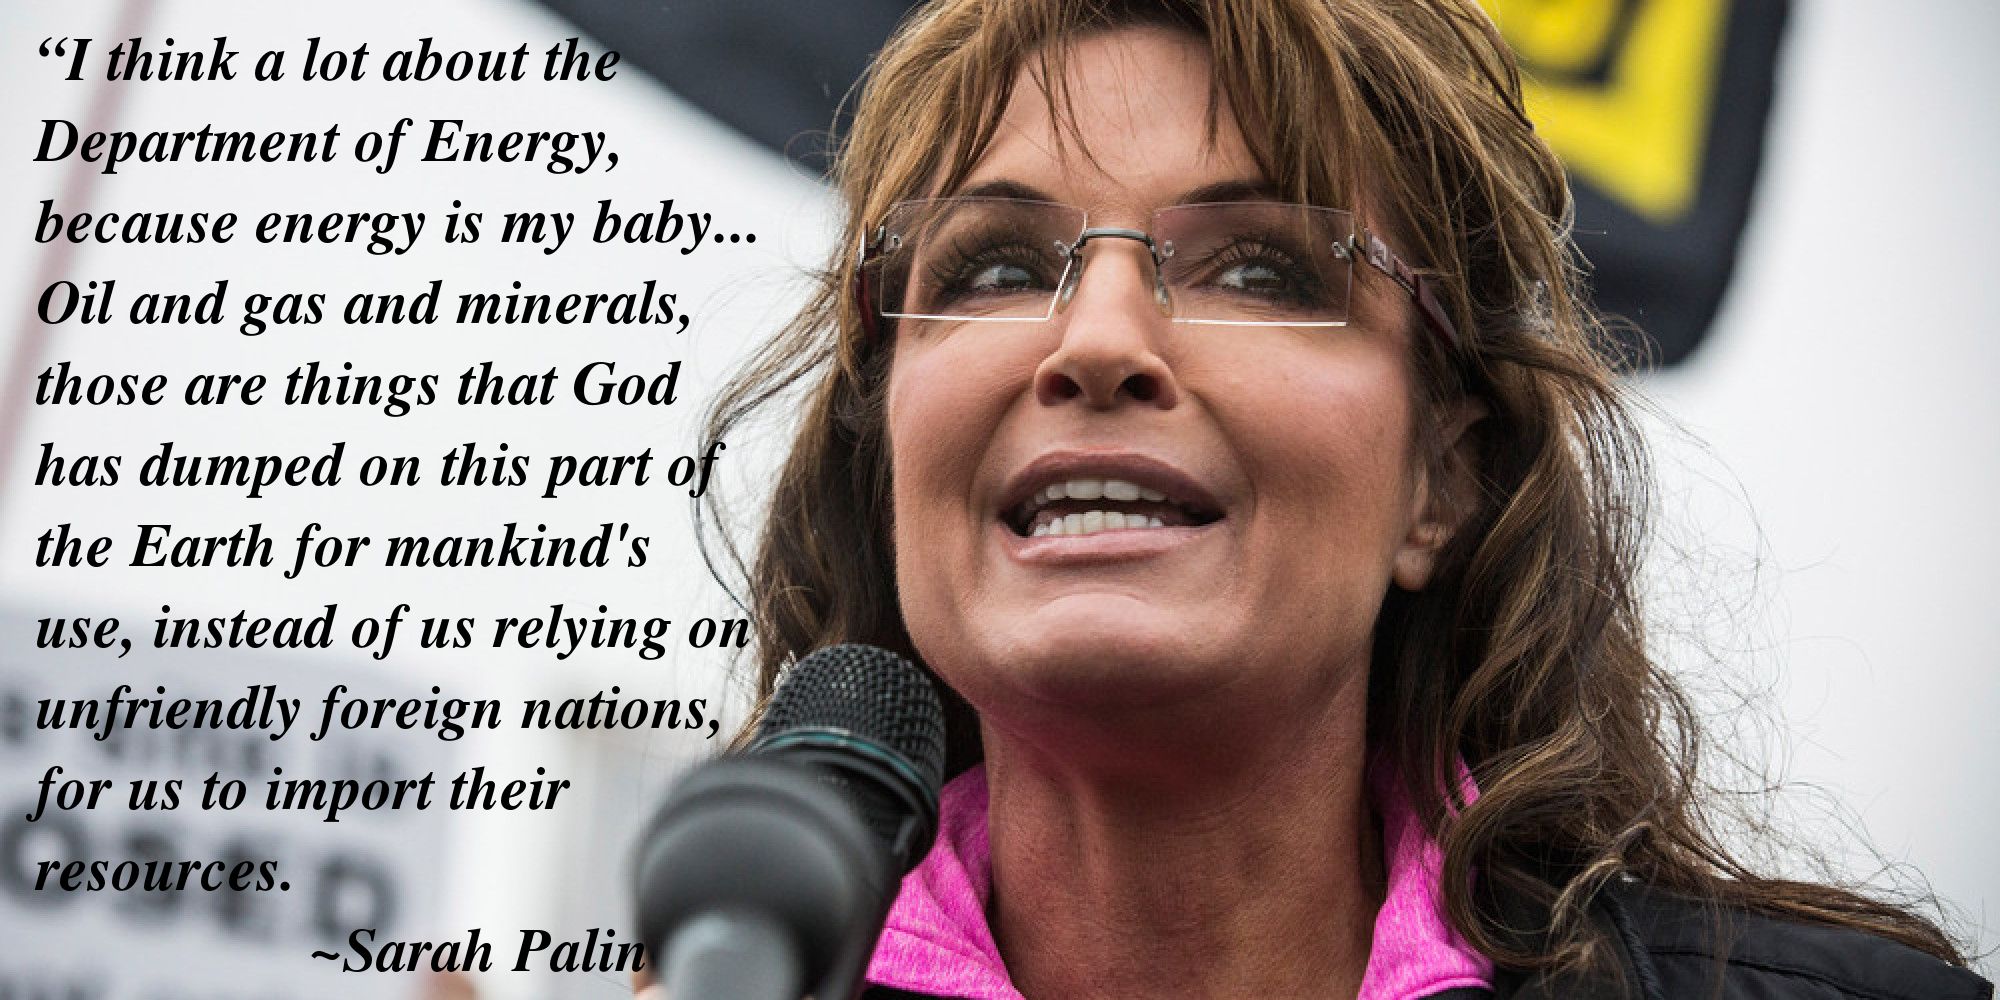 Sarah Palin, Drill Baby, Drill!